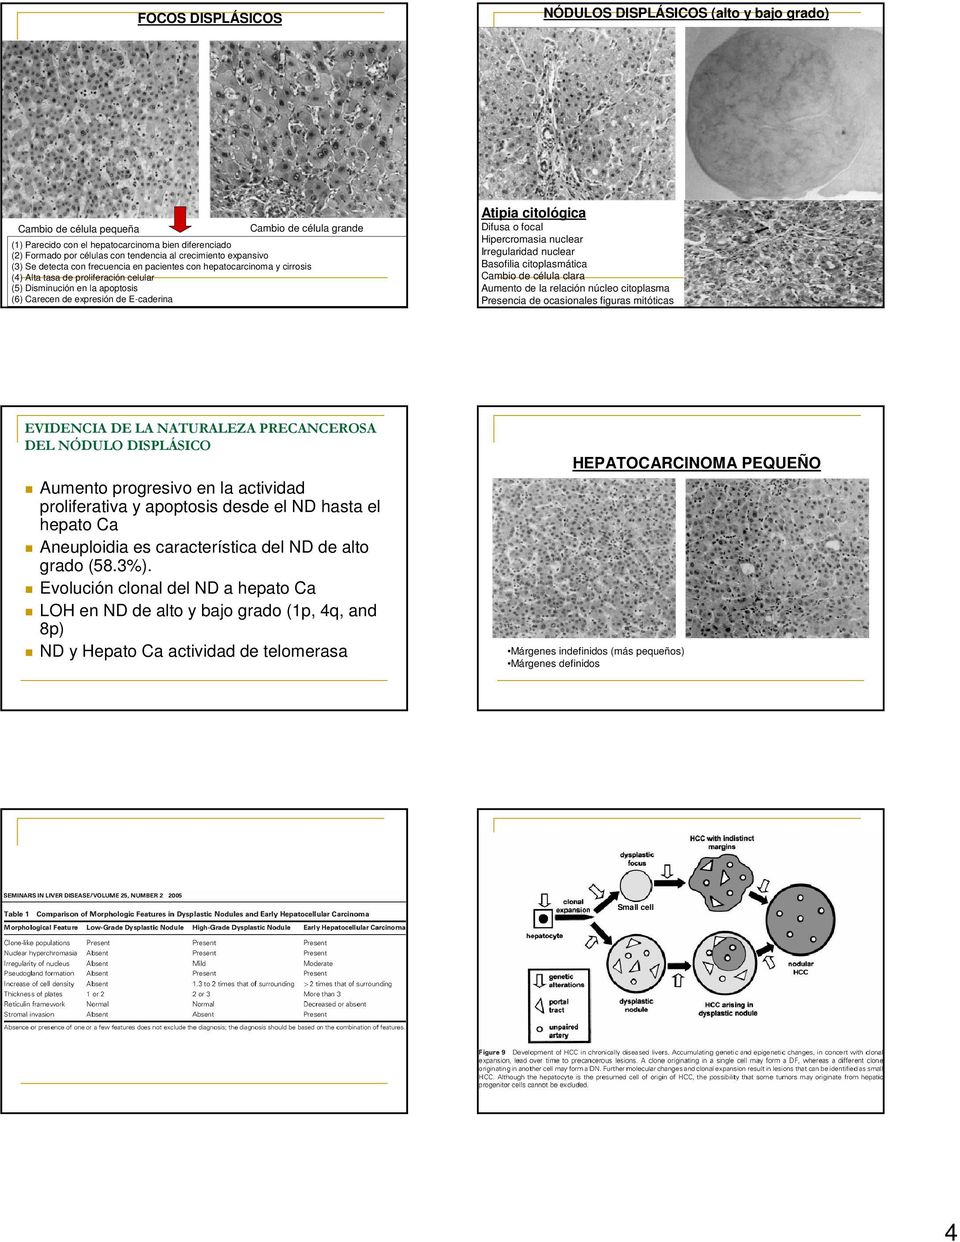 E-caderina Atipia citológica Difusa o focal Hipercromasia nuclear Irregularidad nuclear Basofilia citoplasmática Cambio de célula clara Aumento de la relación núcleo citoplasma Presencia de